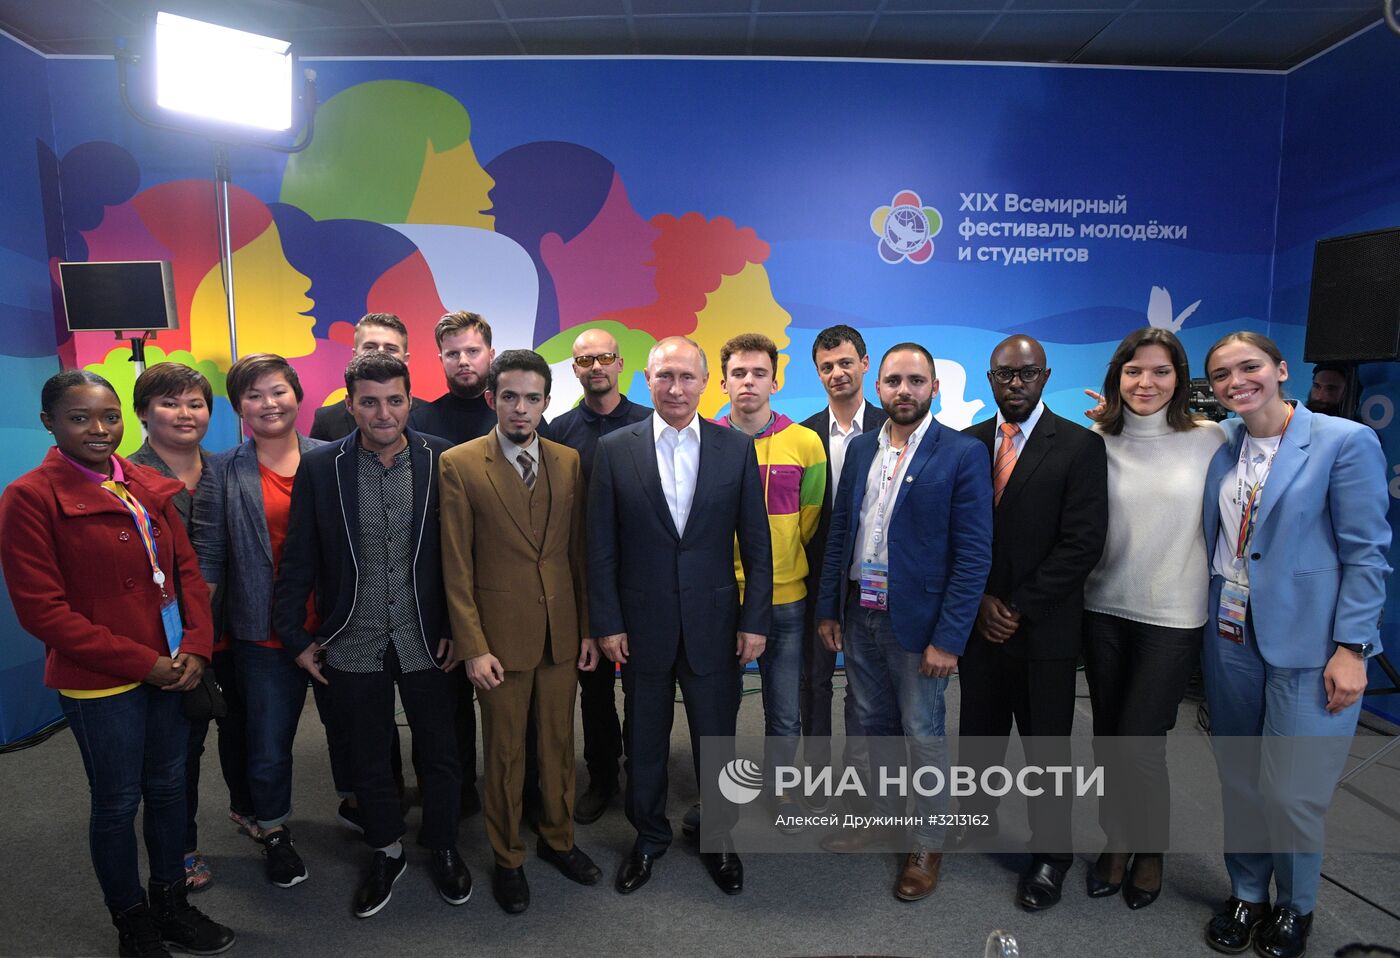 Президент РФ В. Путин принял участие в открытии Всемирного фестиваля молодёжи и студентов в Сочи